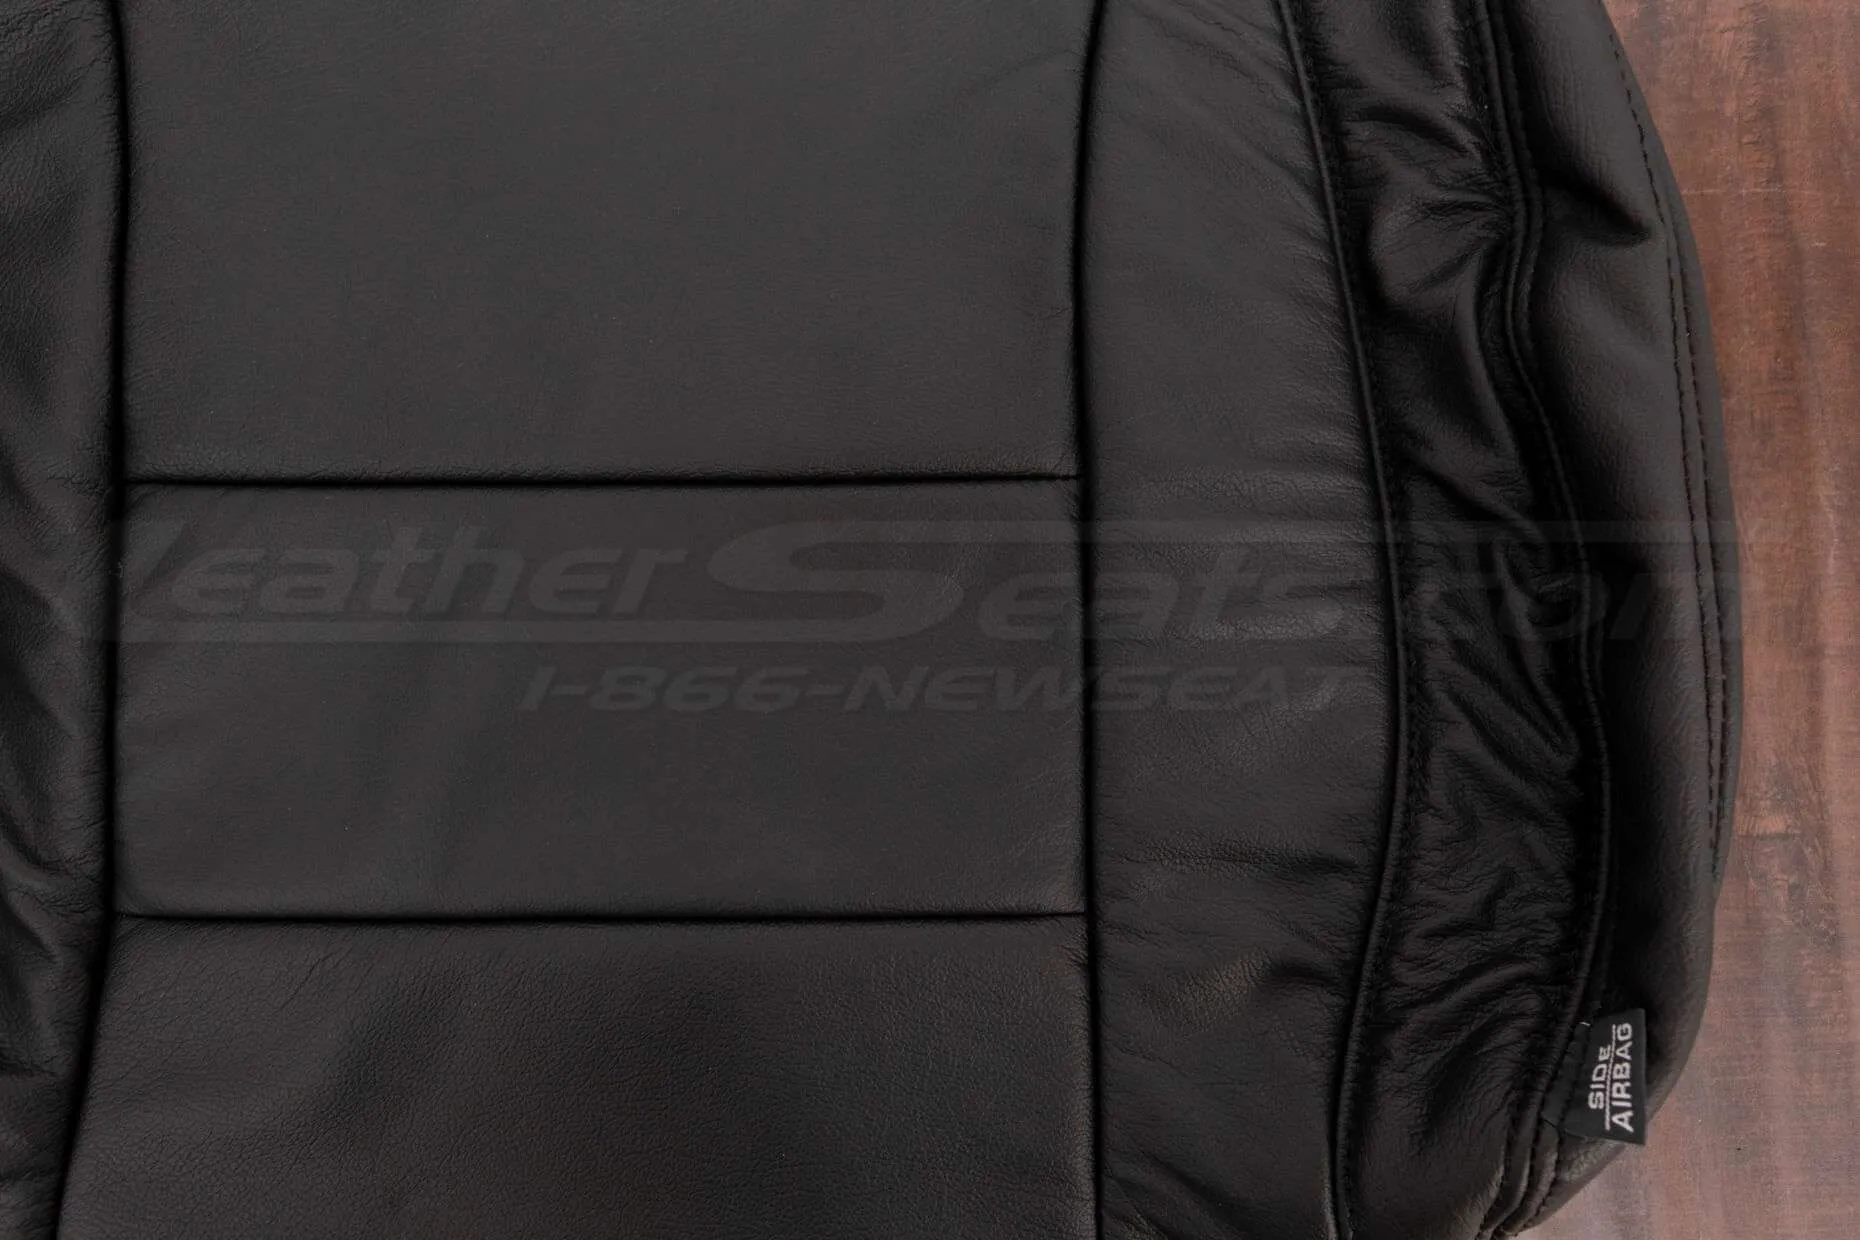 16-20 Chevrolet Malibu Upholstery Kit - Black - Insert and side bolster